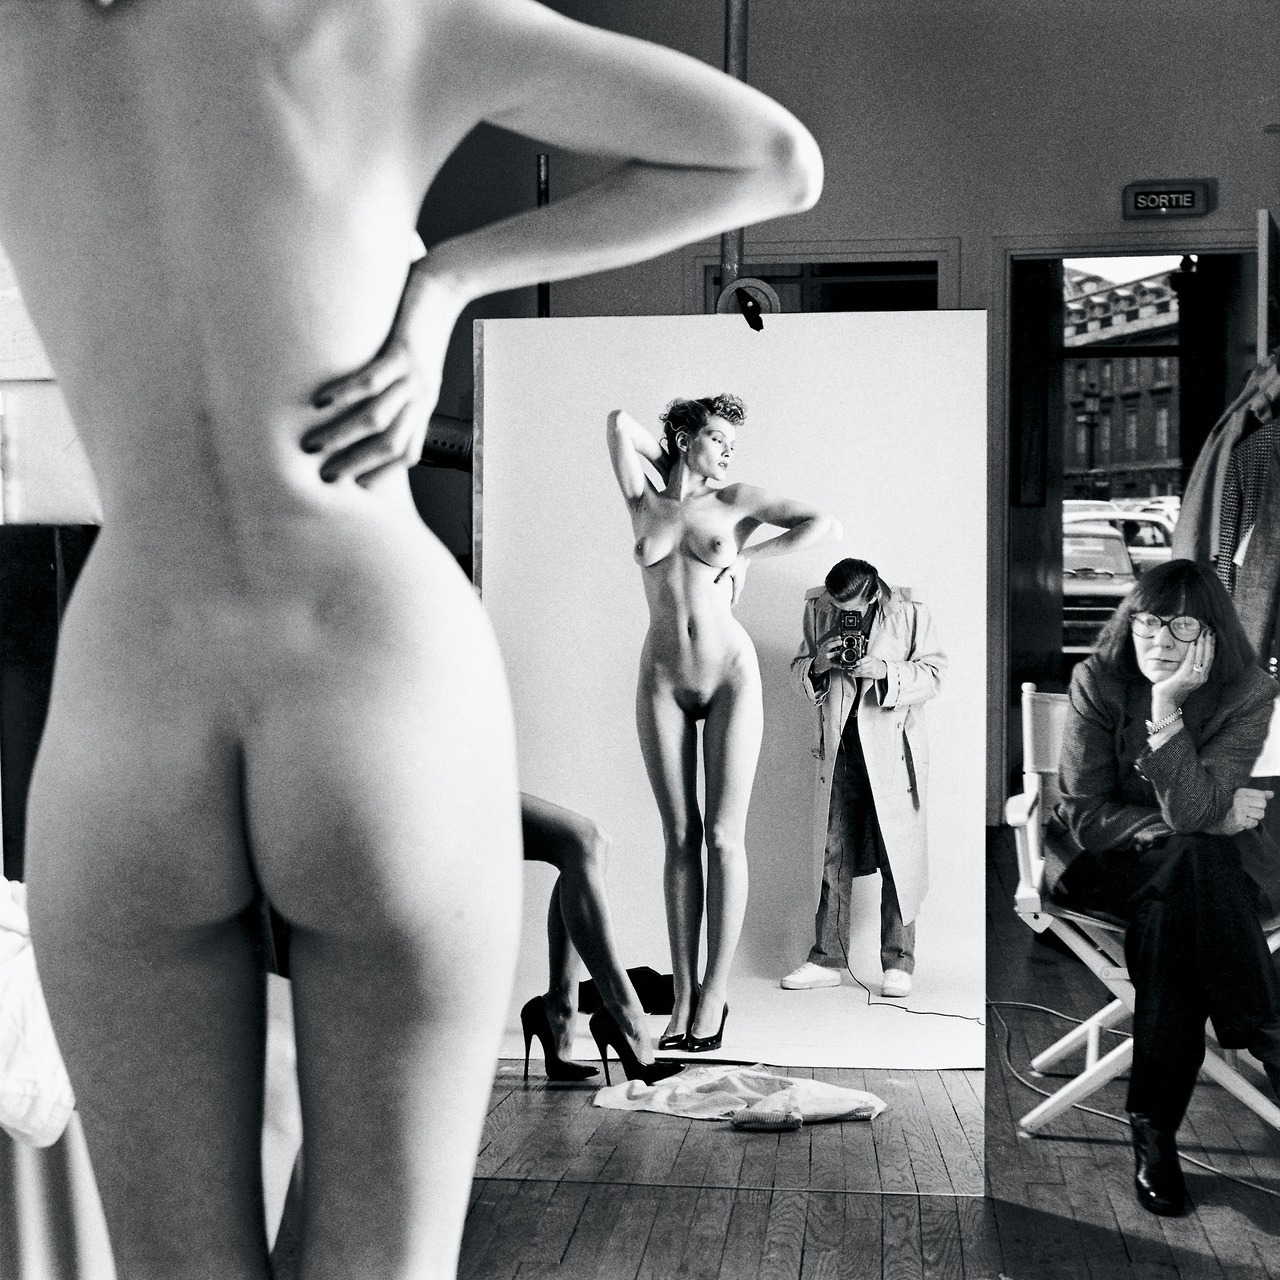 romantisme-pornographique:
“Helmut Newton, Self Portrait with Wife and Models, Vogue Studio, Paris, 1981. HQ.
”